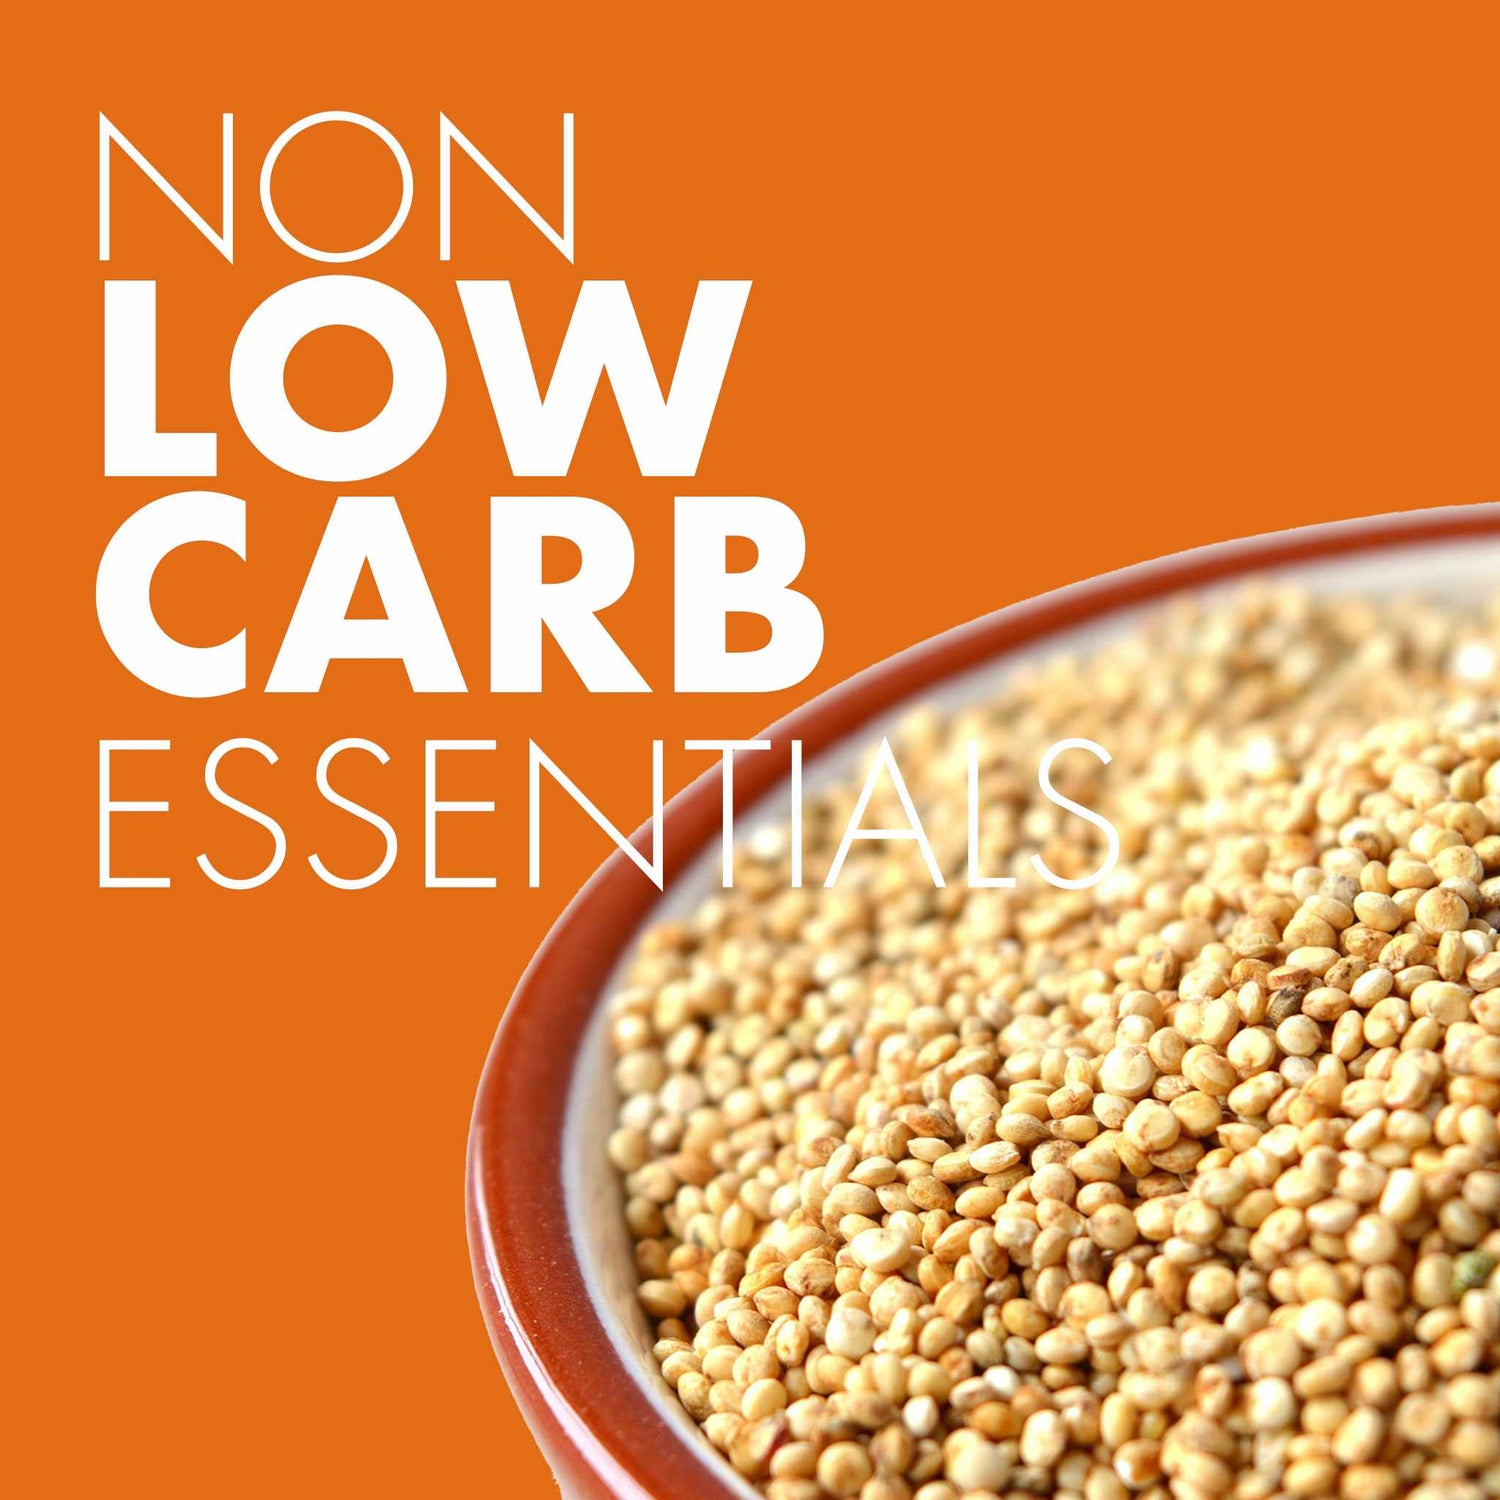 Non Low-carb Essentials